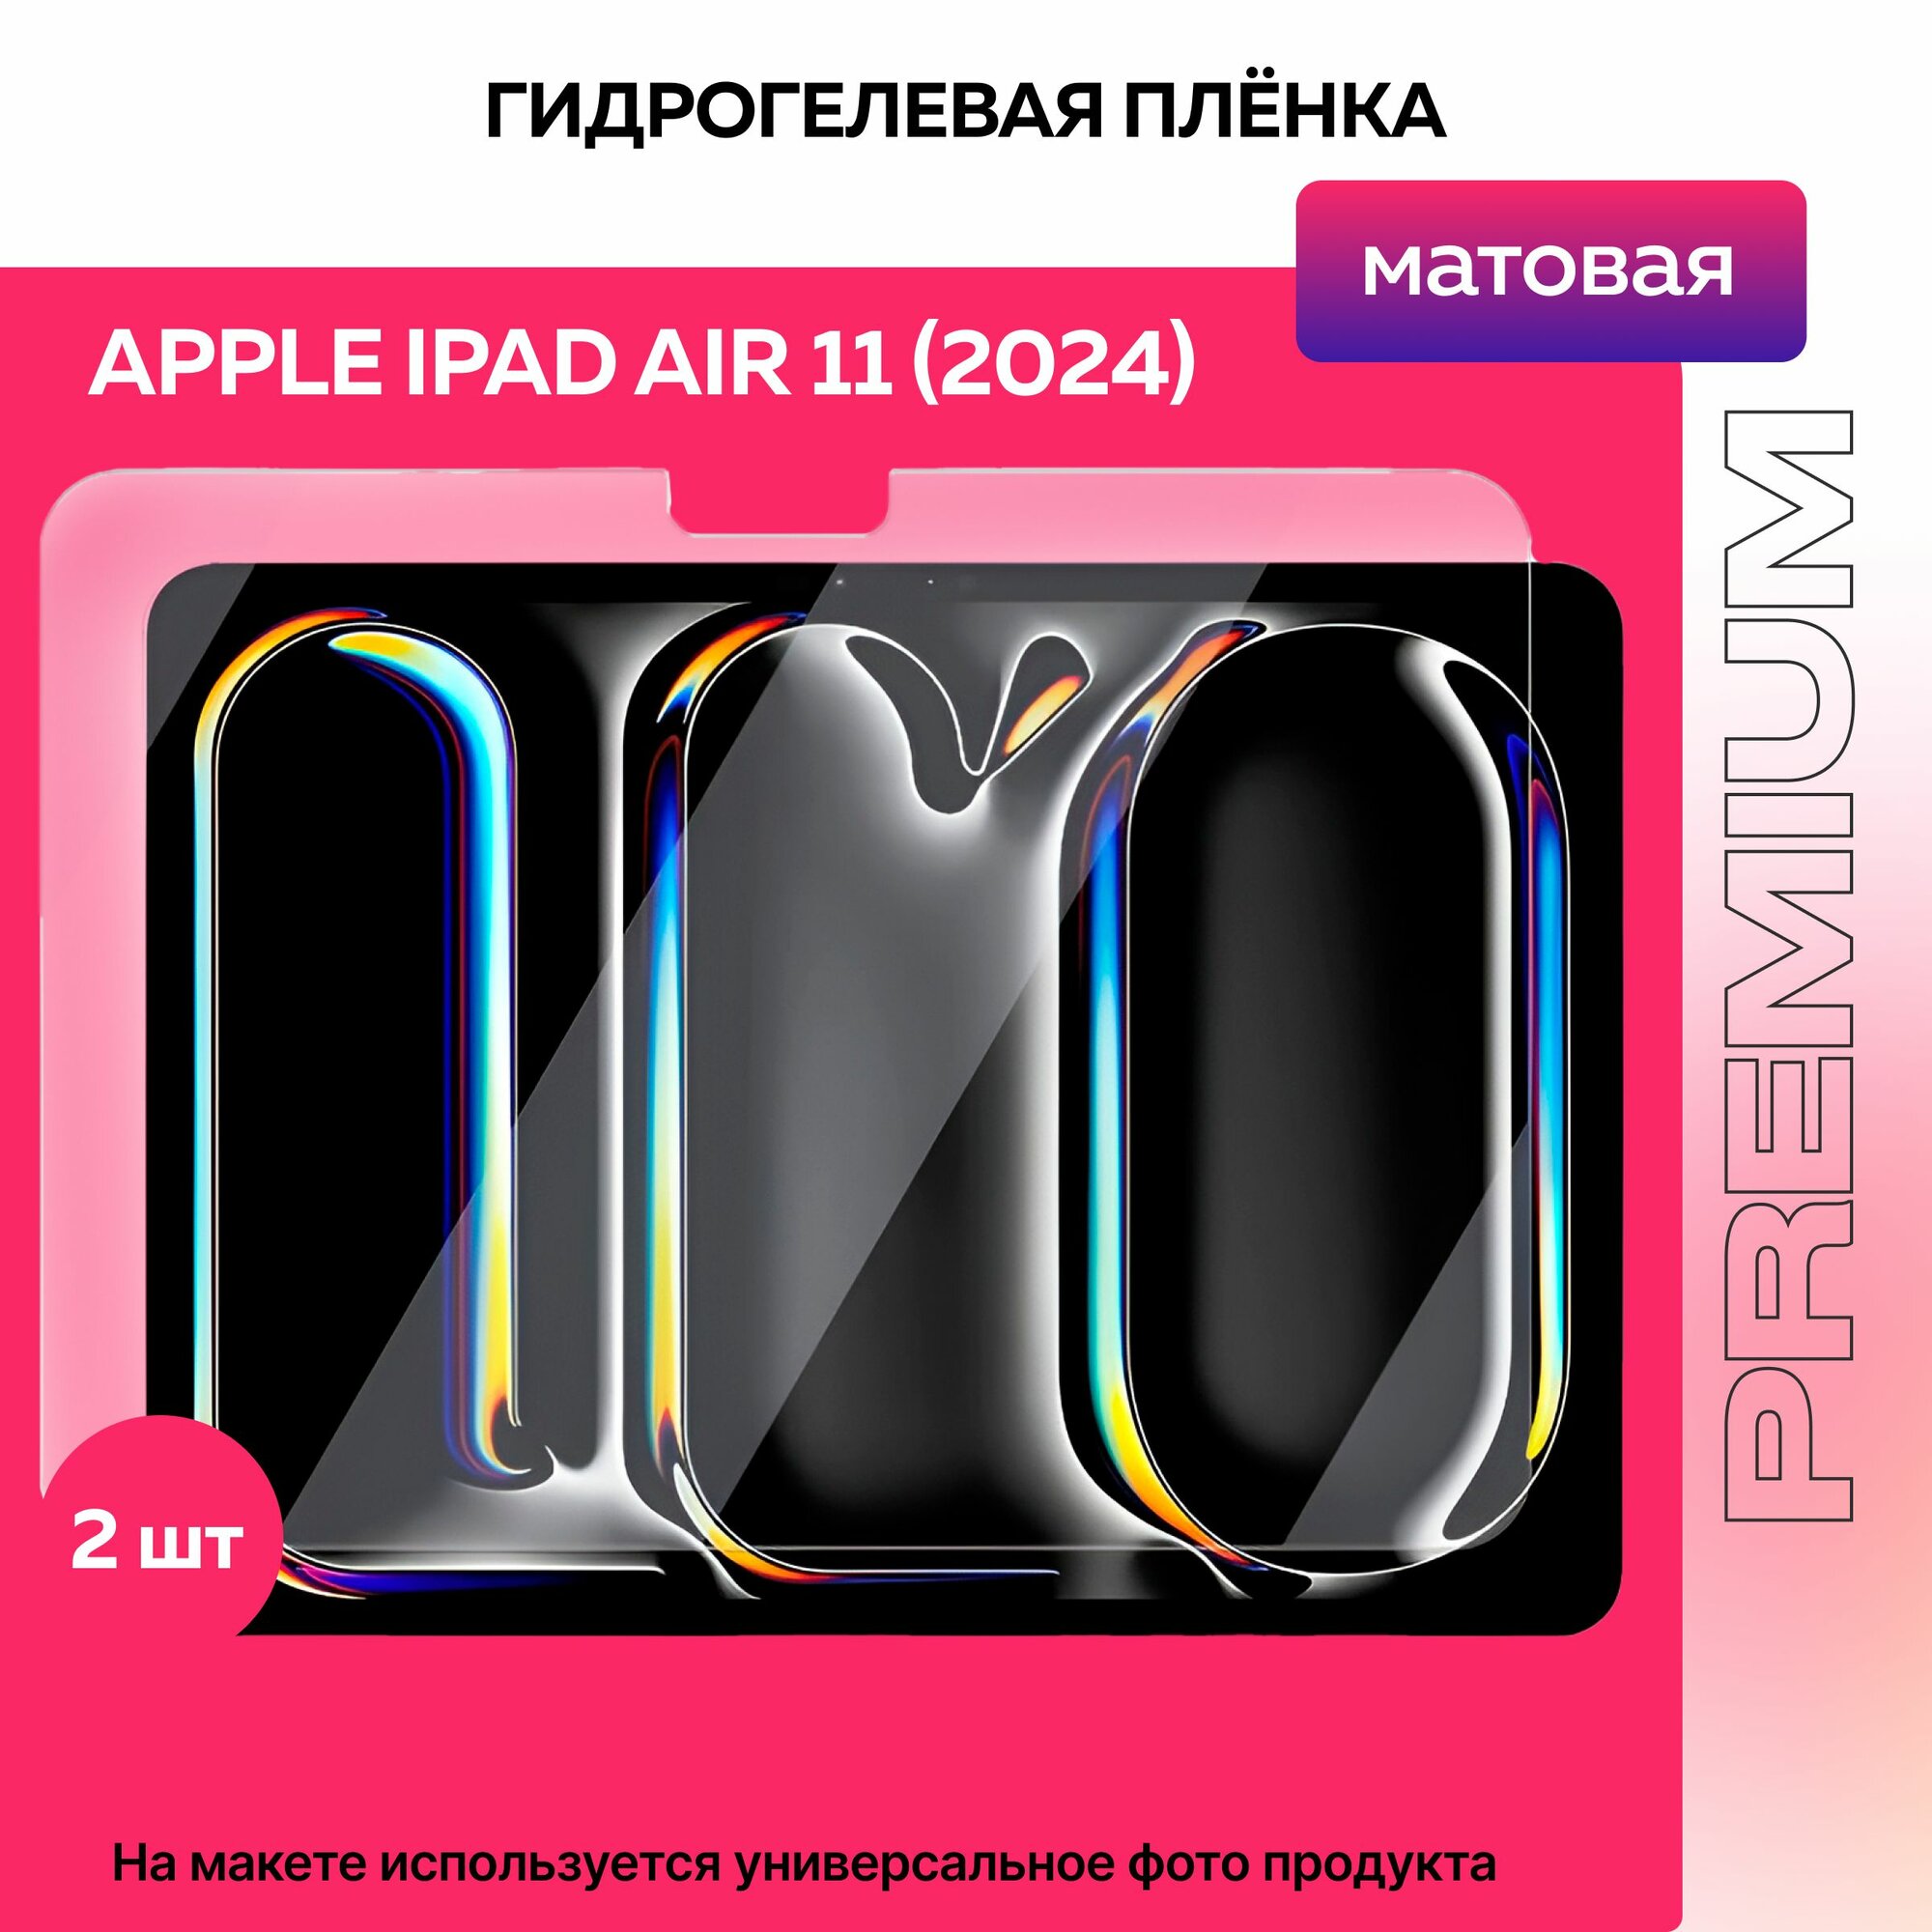 Защитная матовая гидрогелевая пленка на Apple iPad Air 11 (2024) 2шт